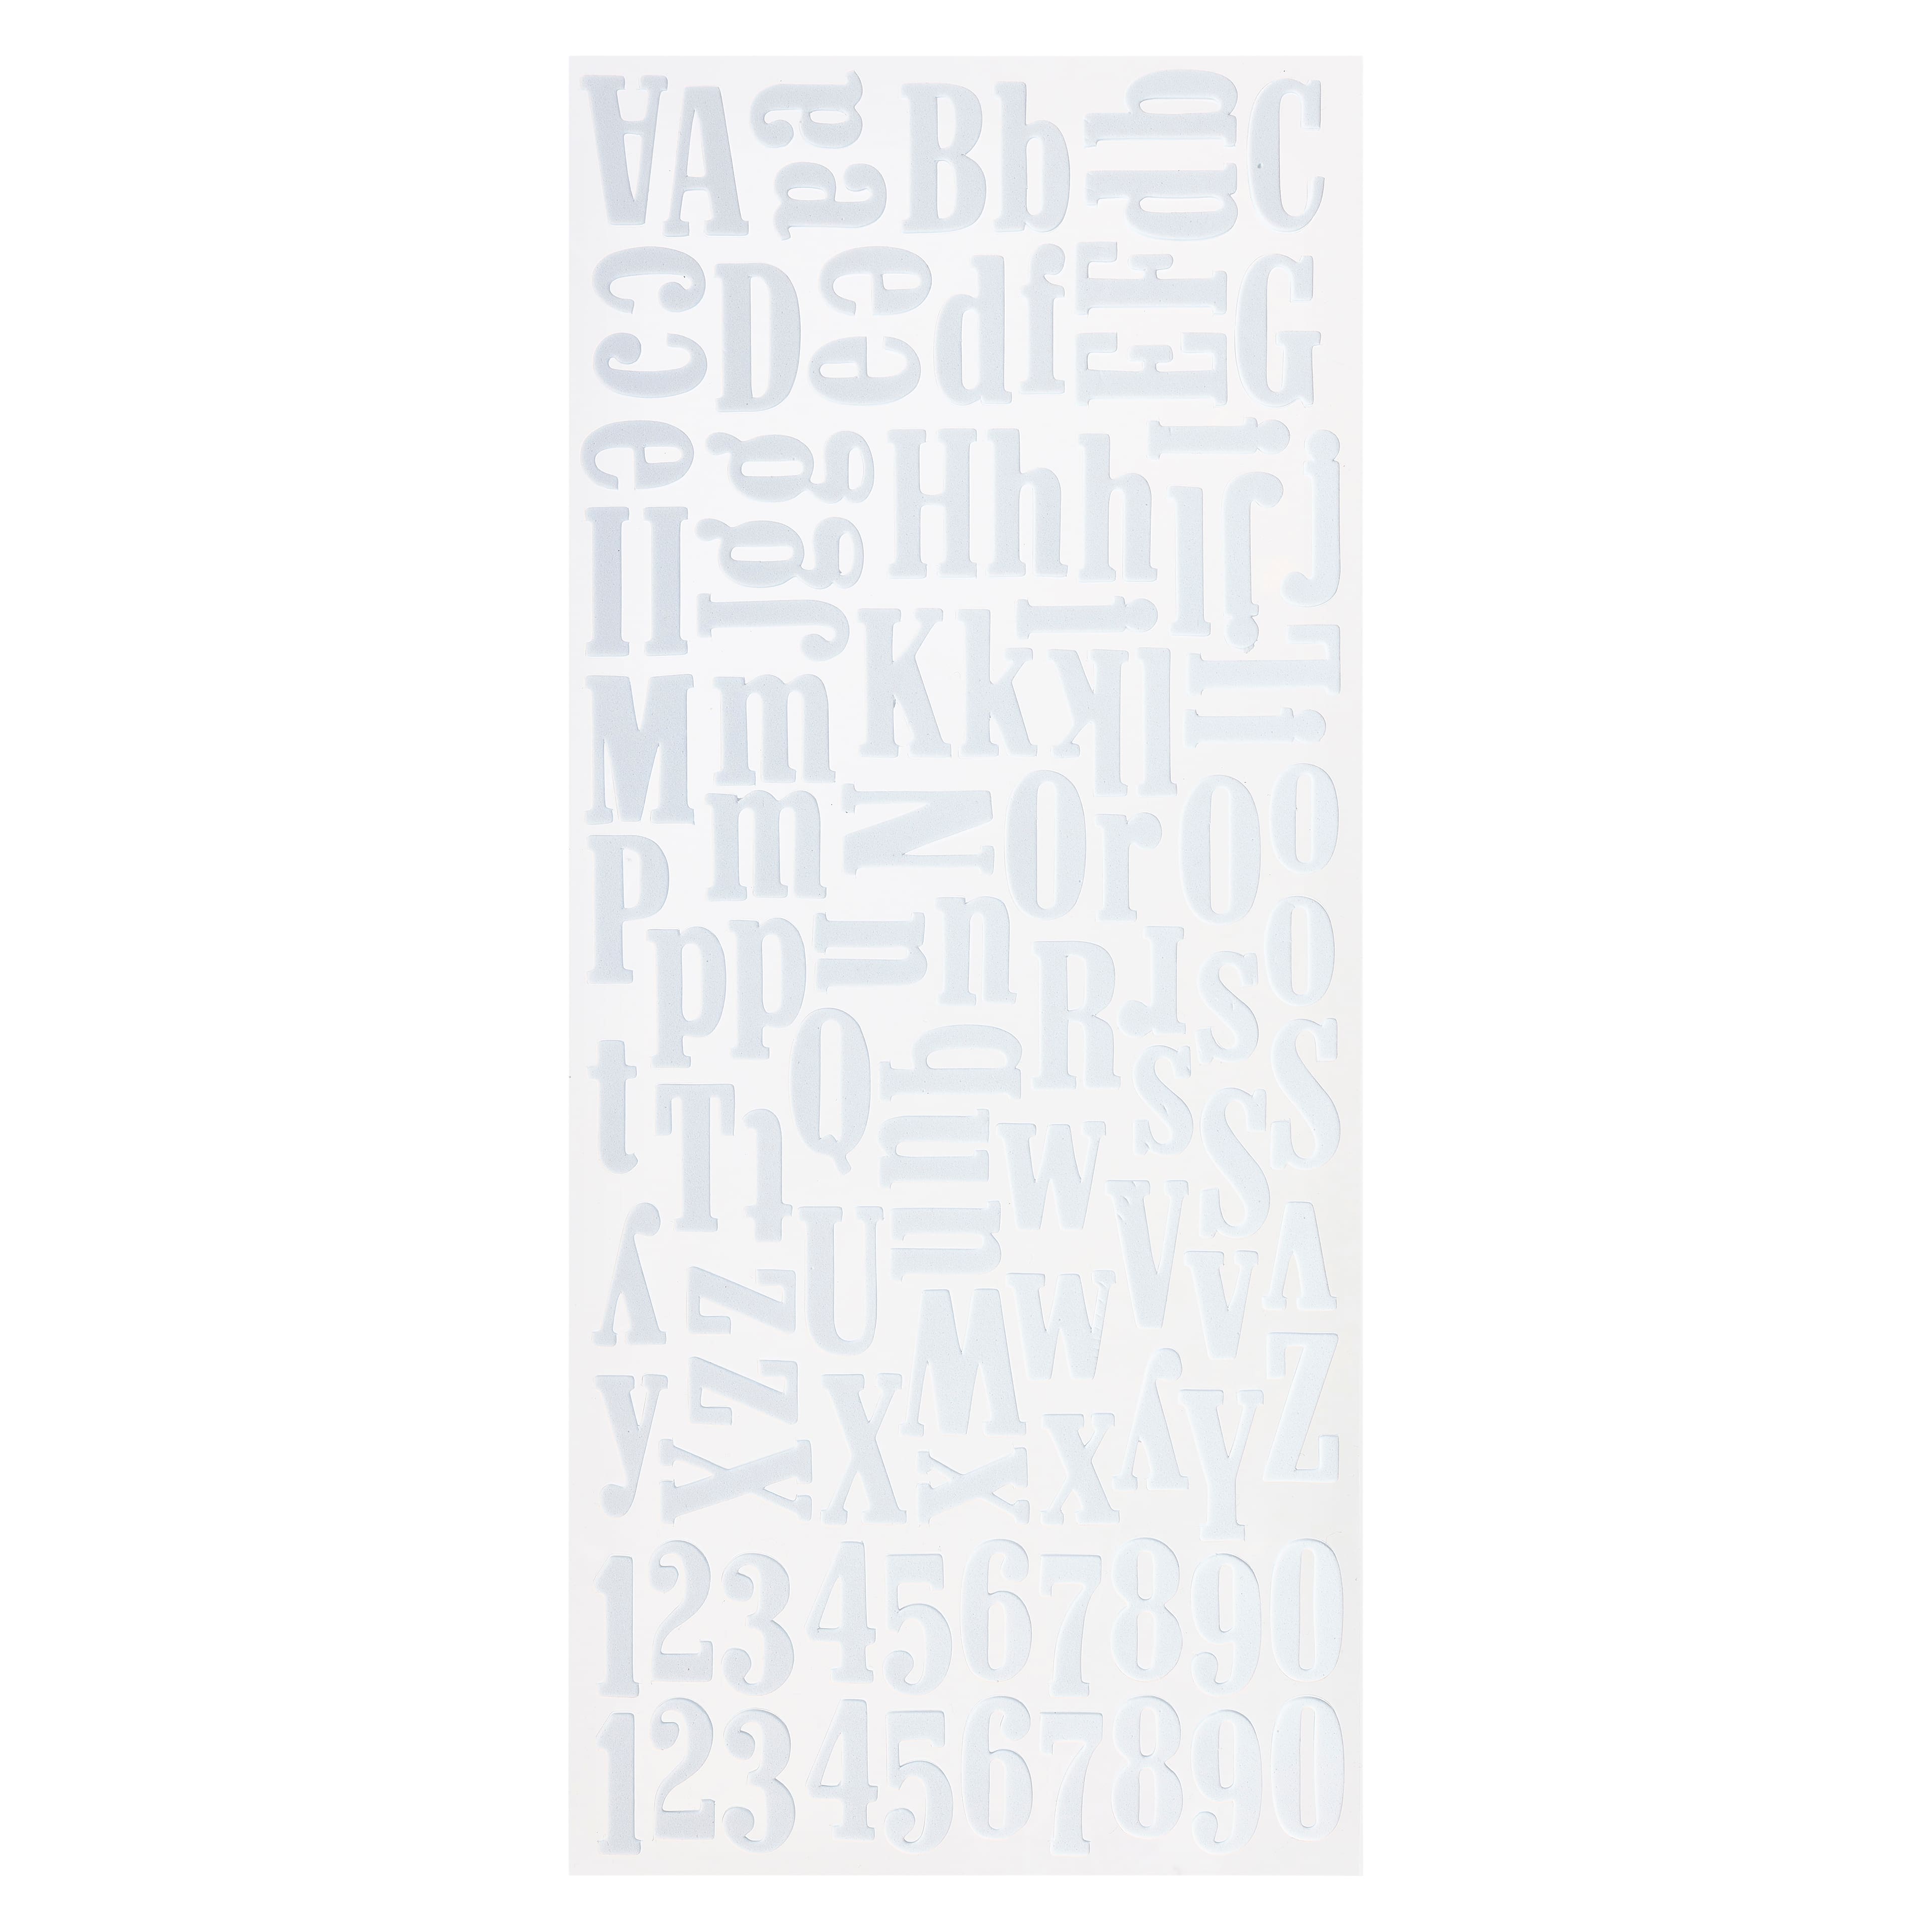 White Alphabet Letter Sticker Pack